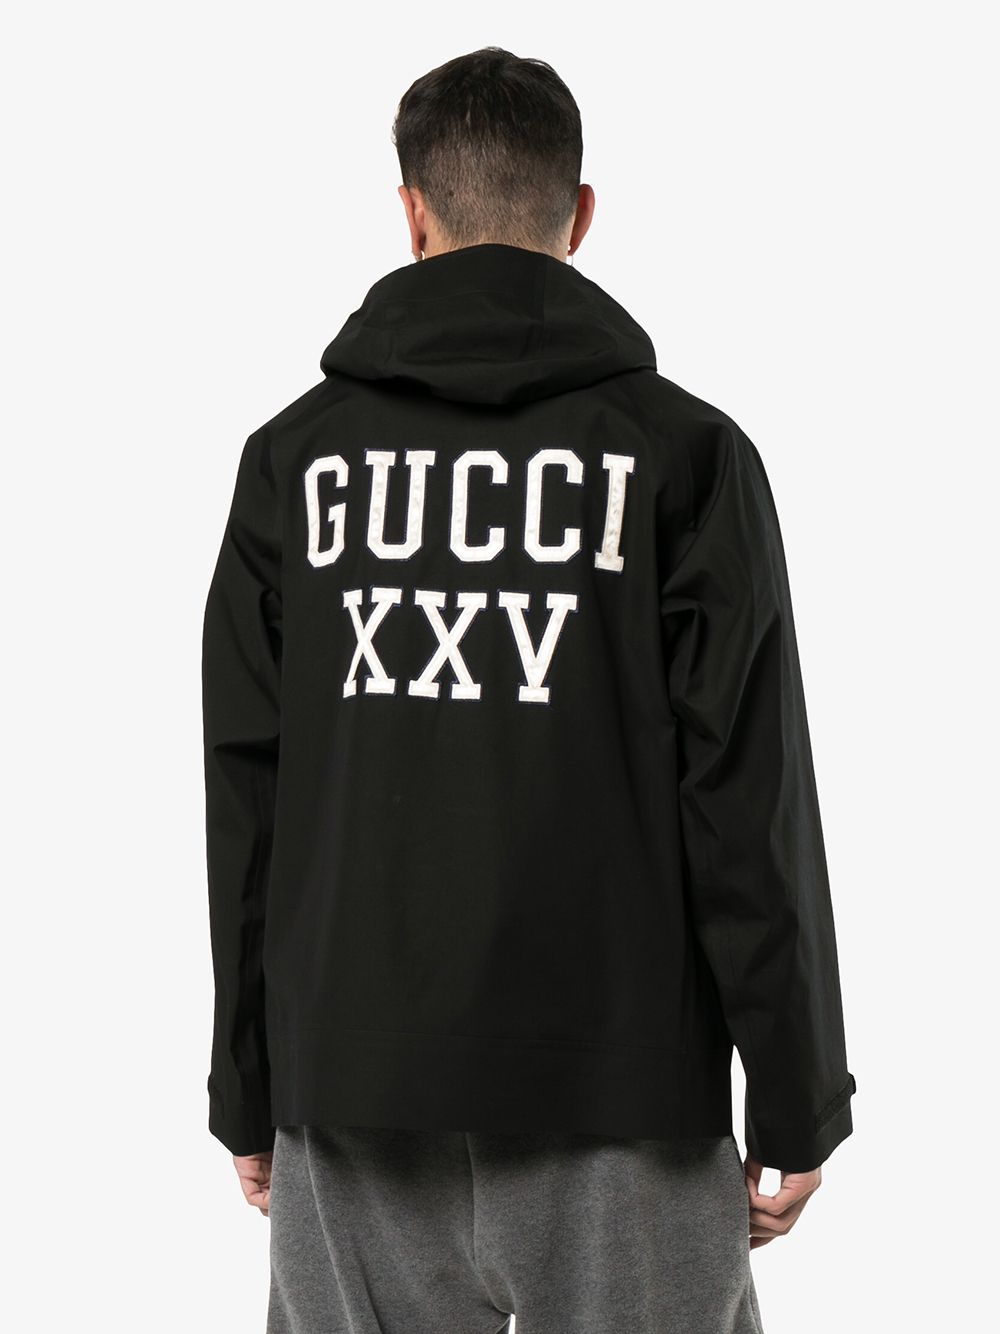 фото Gucci куртка с капюшоном